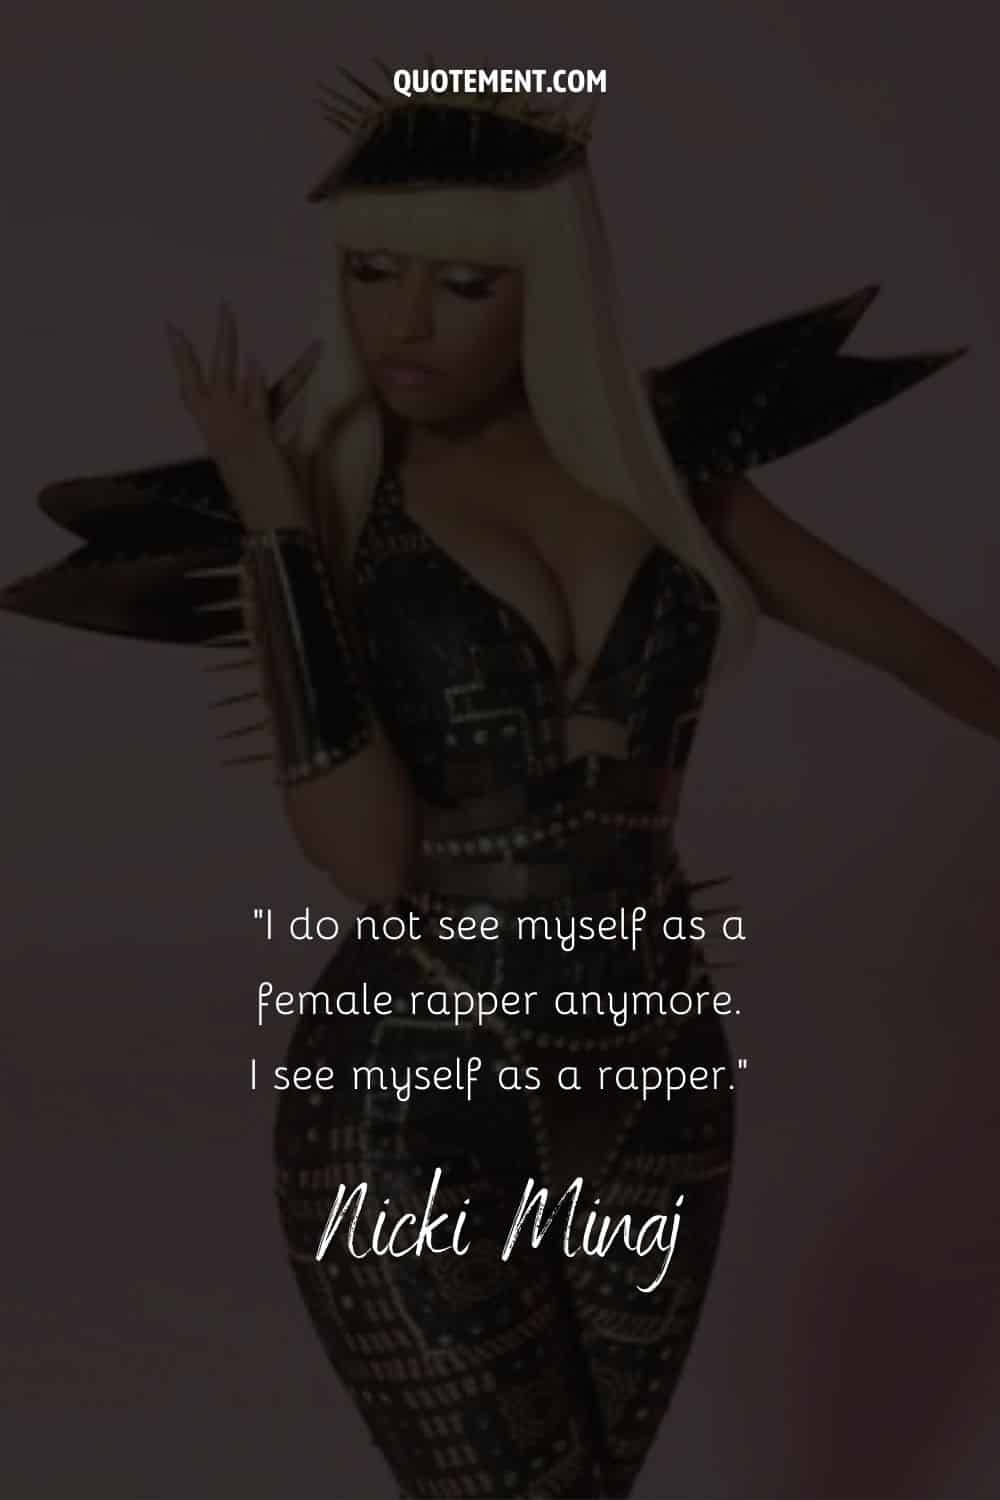 Cita inspiradora de Nicki Minaj sobre cómo se ve a sí misma, y su foto de fondo